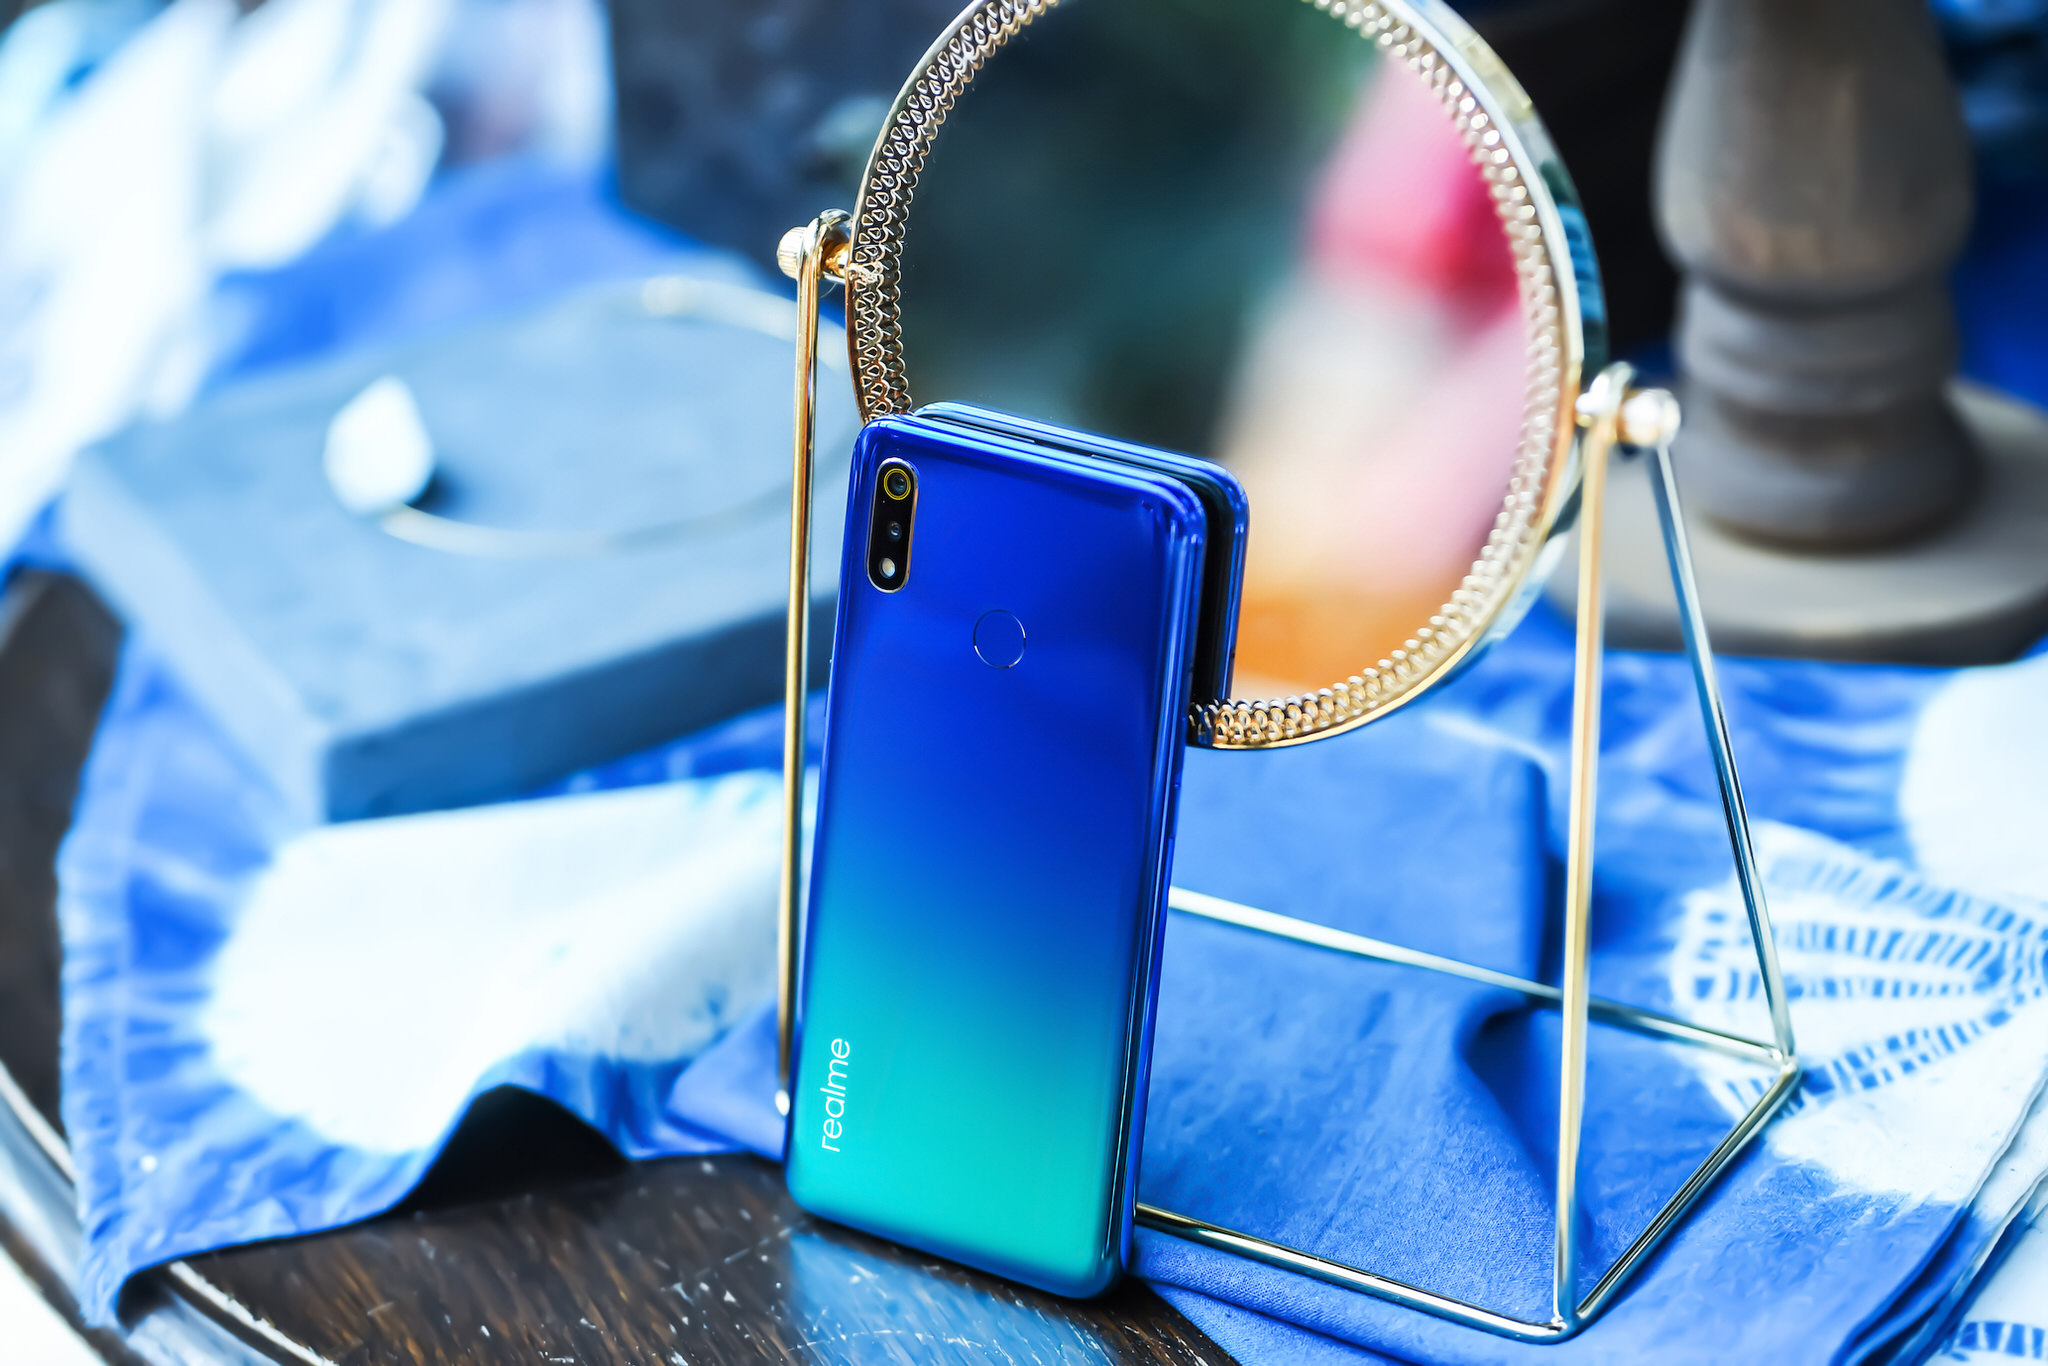 Realme xác nhận sẽ giới thiệu Realme 3 tại Việt Nam vào ngày 4/4/2019